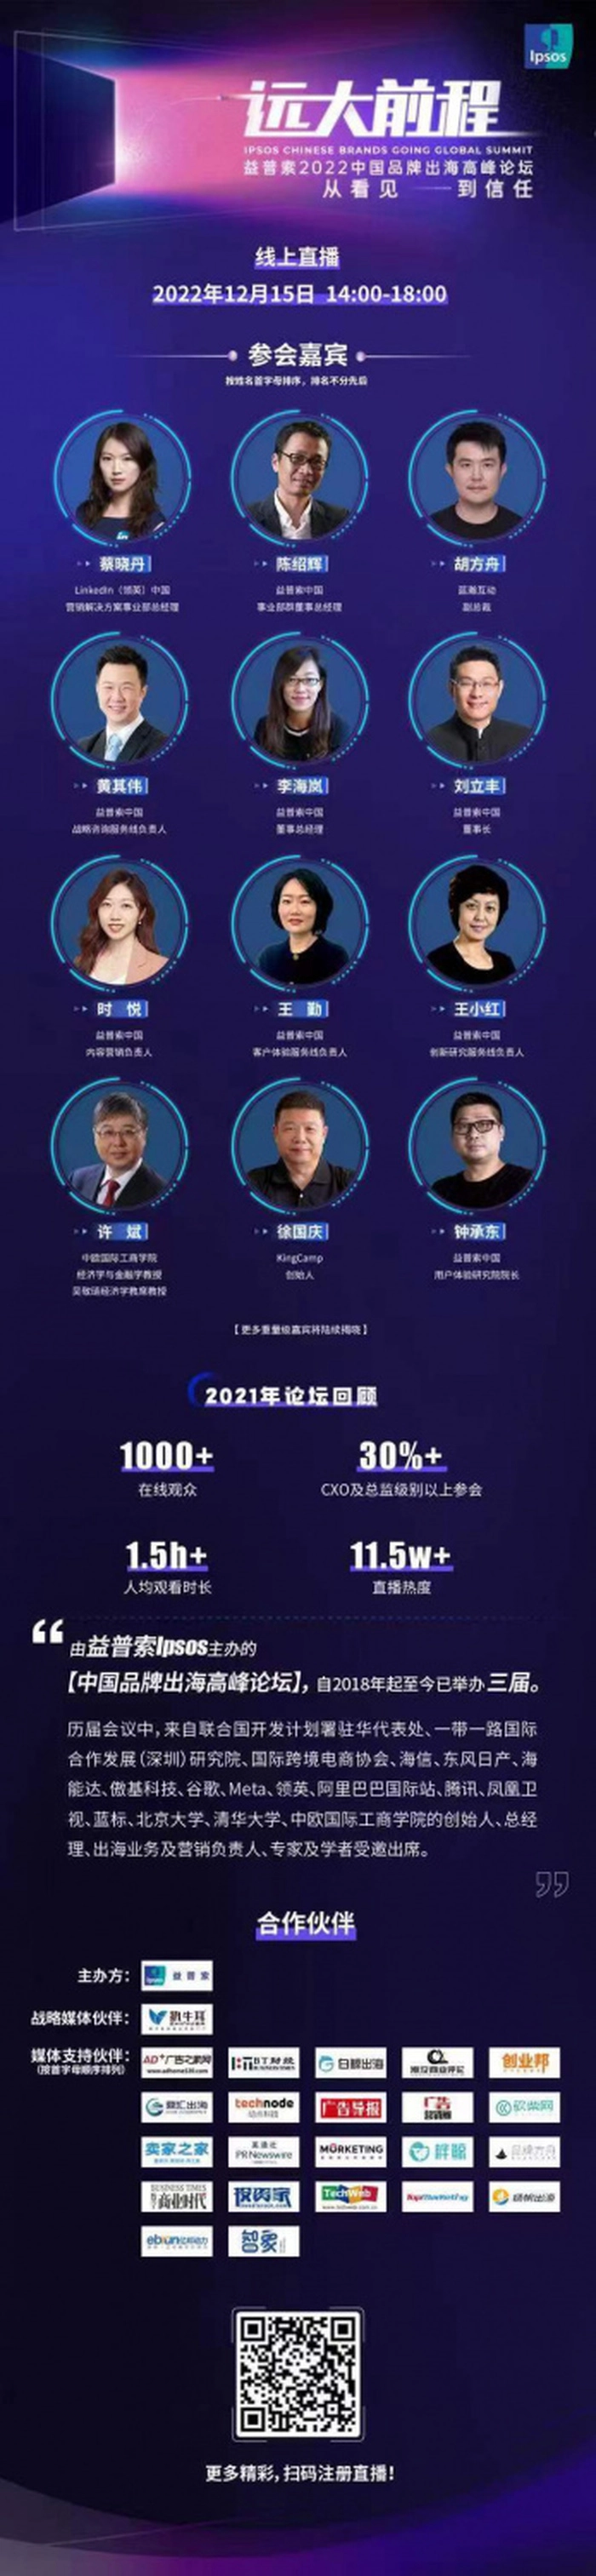 出海品牌的制胜之道：解构“信任力”密码  ——中国品牌出海高峰论坛将于12月15日举行